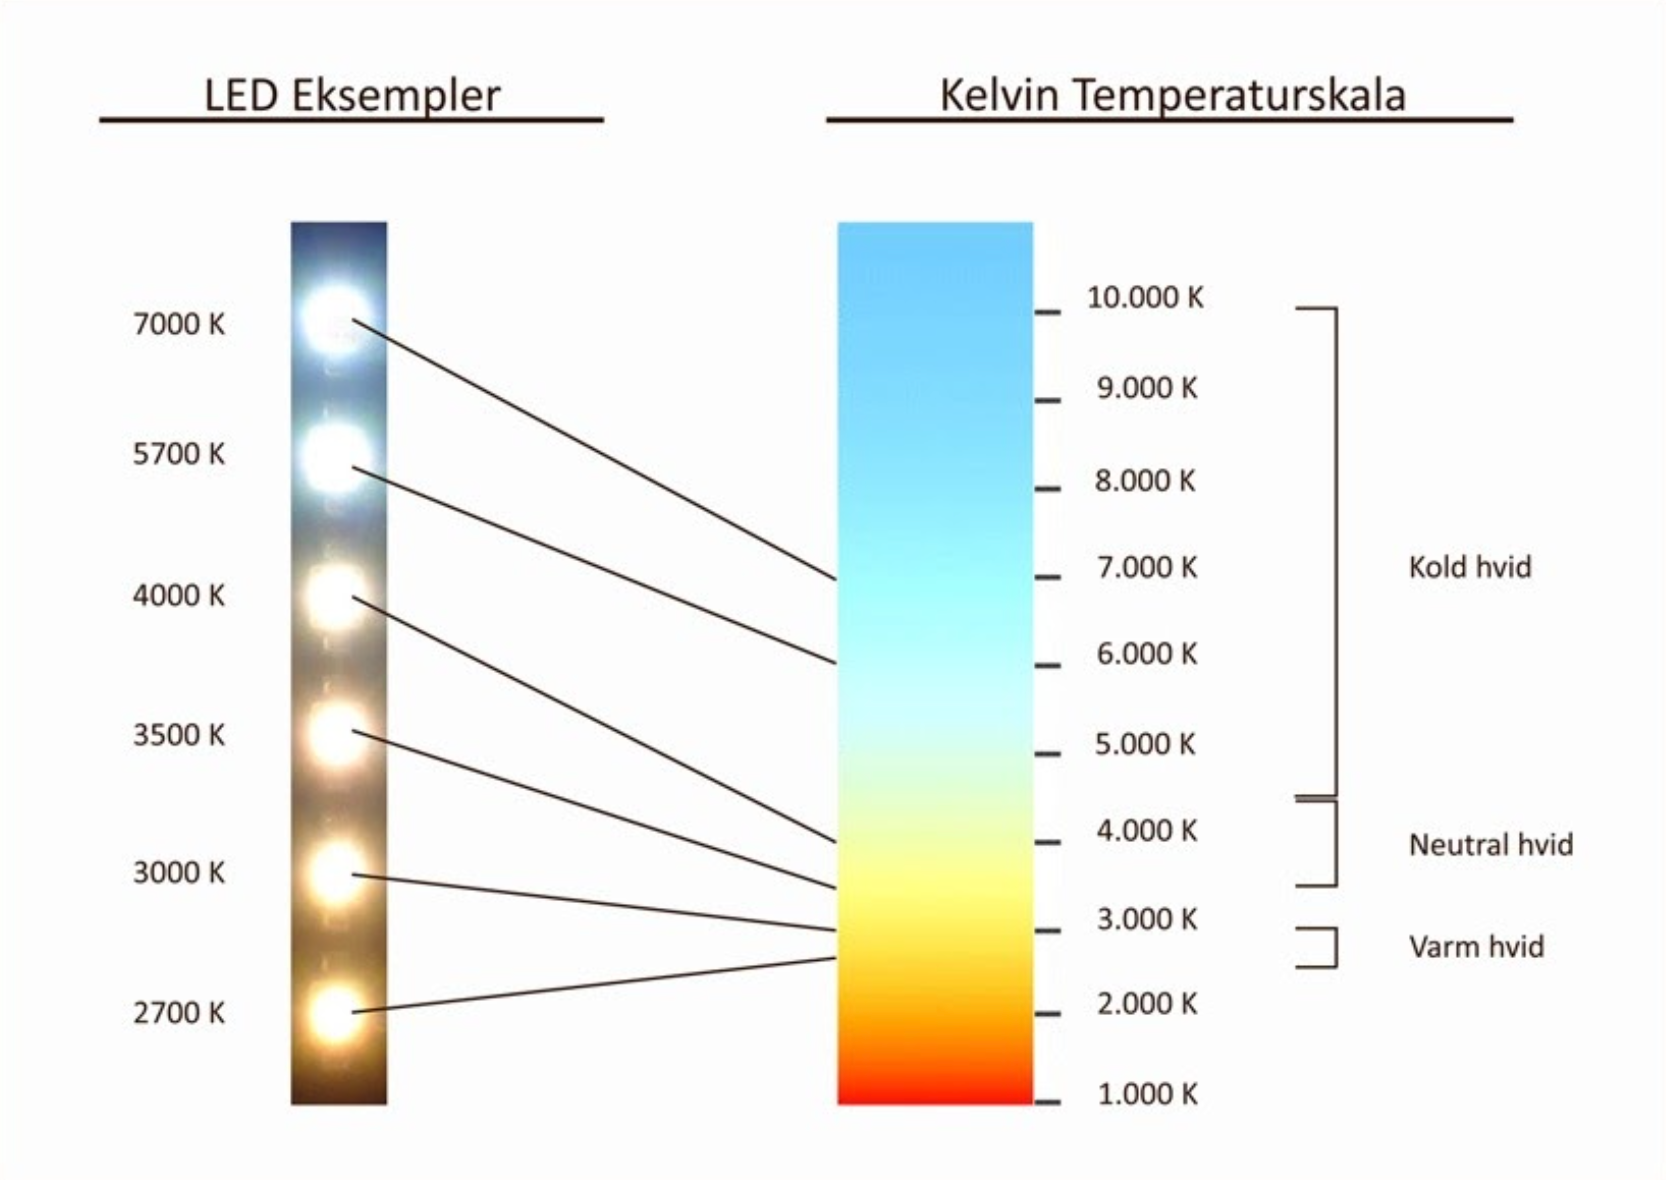 Теплый сколько кельвинов. Температура света светодиодных ламп таблица. Таблица свечения светодиодных ламп. Лампа светодиодная 3000 Кельвинов теплый свет. Цветовая температура света шкала.